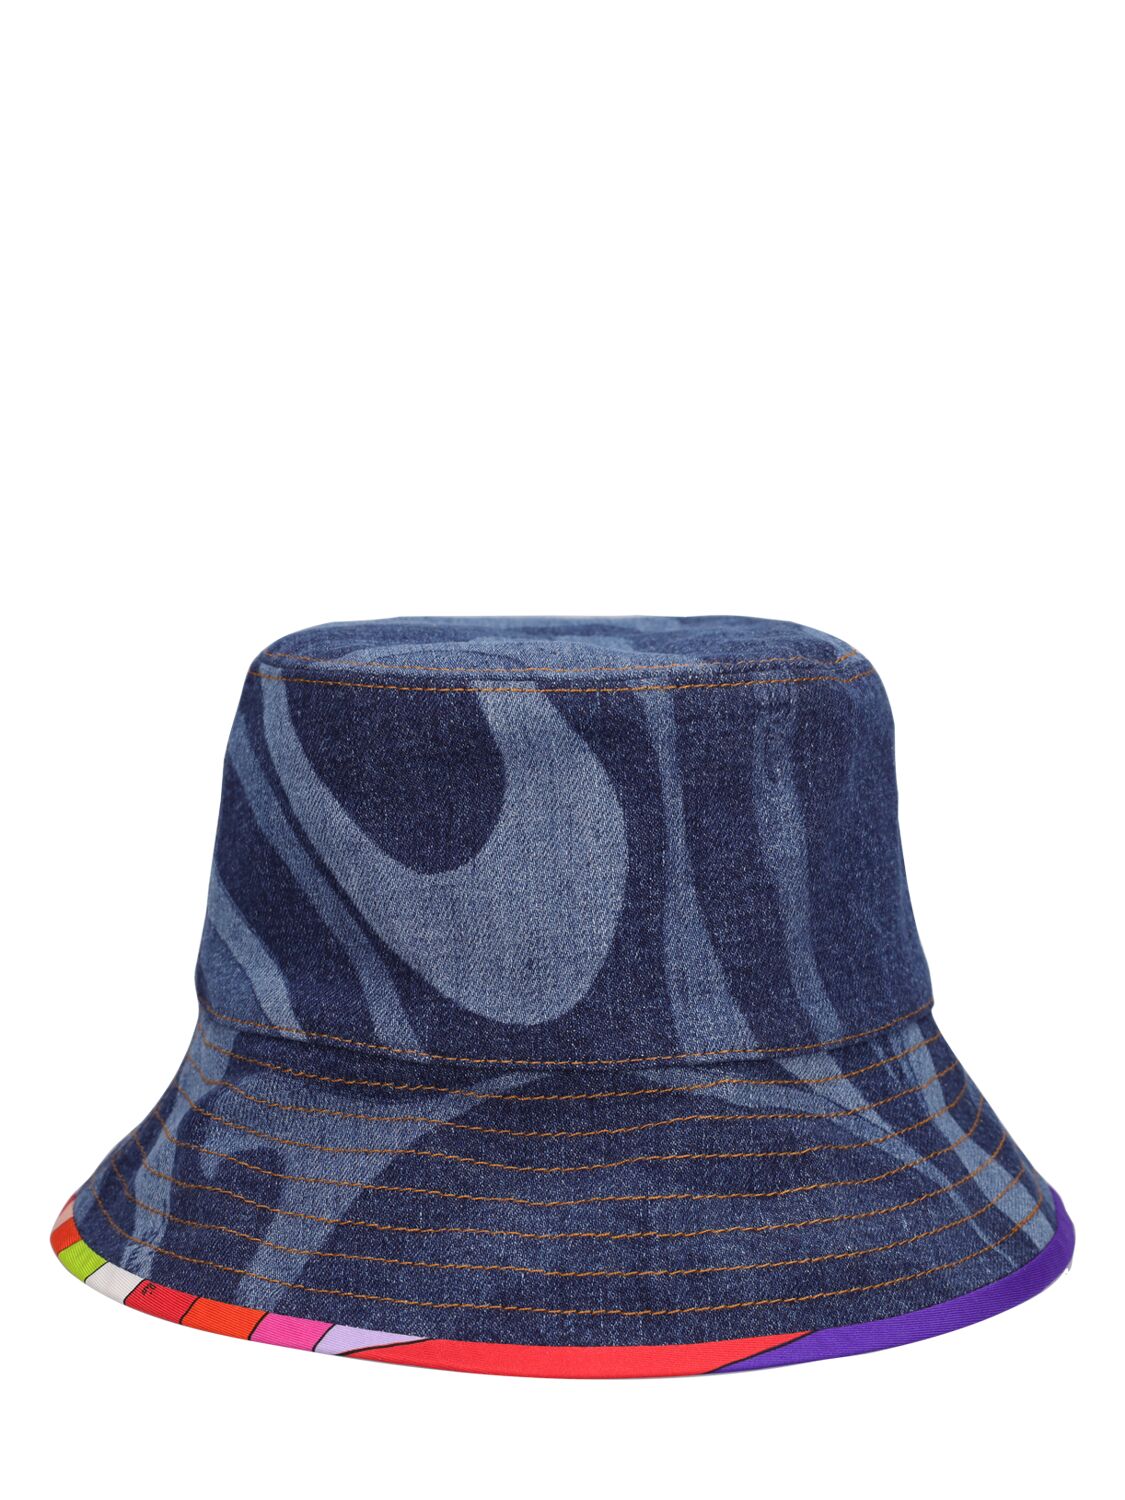 Lasered Denim Bucket Hat